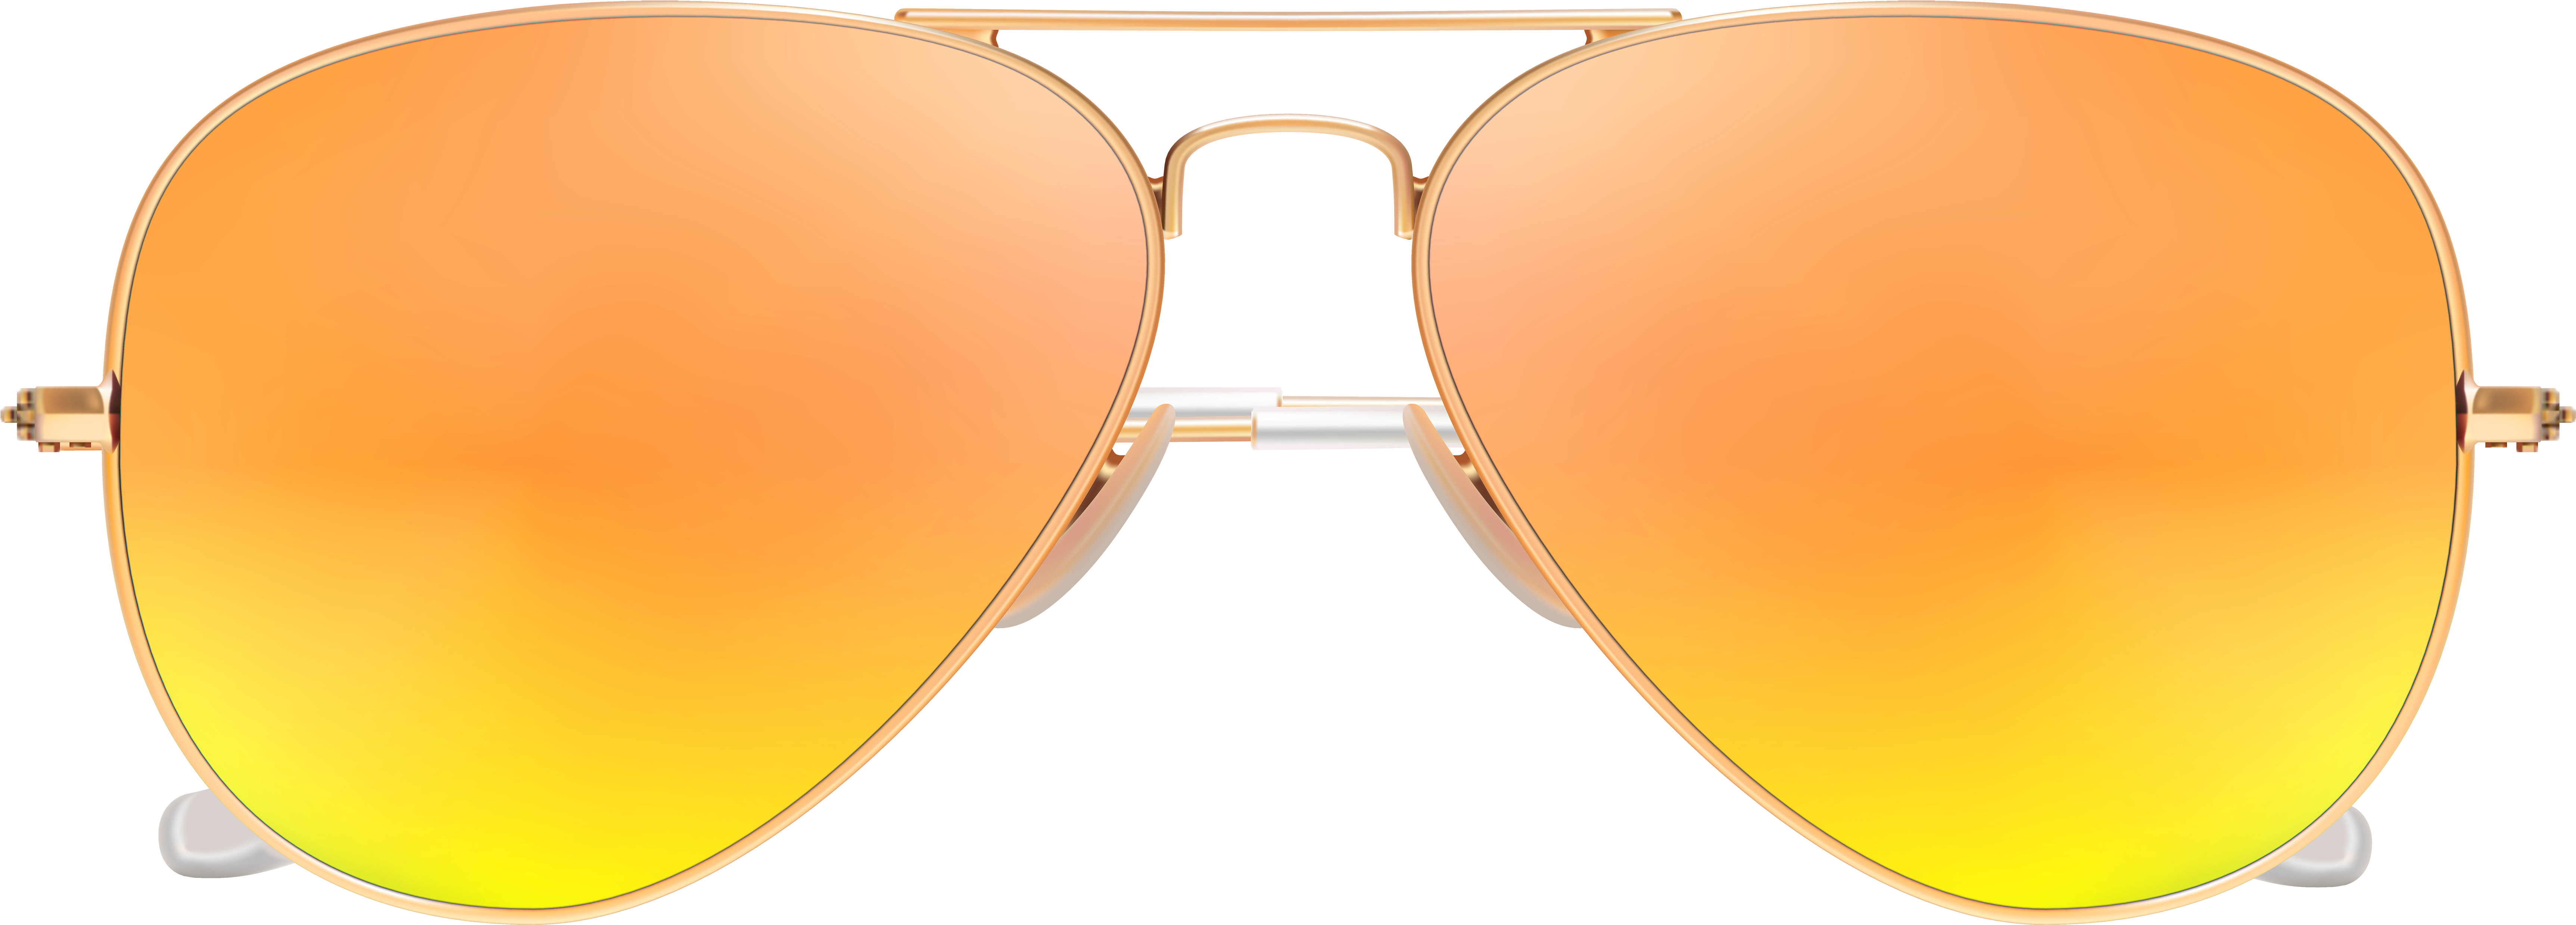 Png Transparent Clip Art - Sunglasses Png Transparent (7000x2605), Png Download